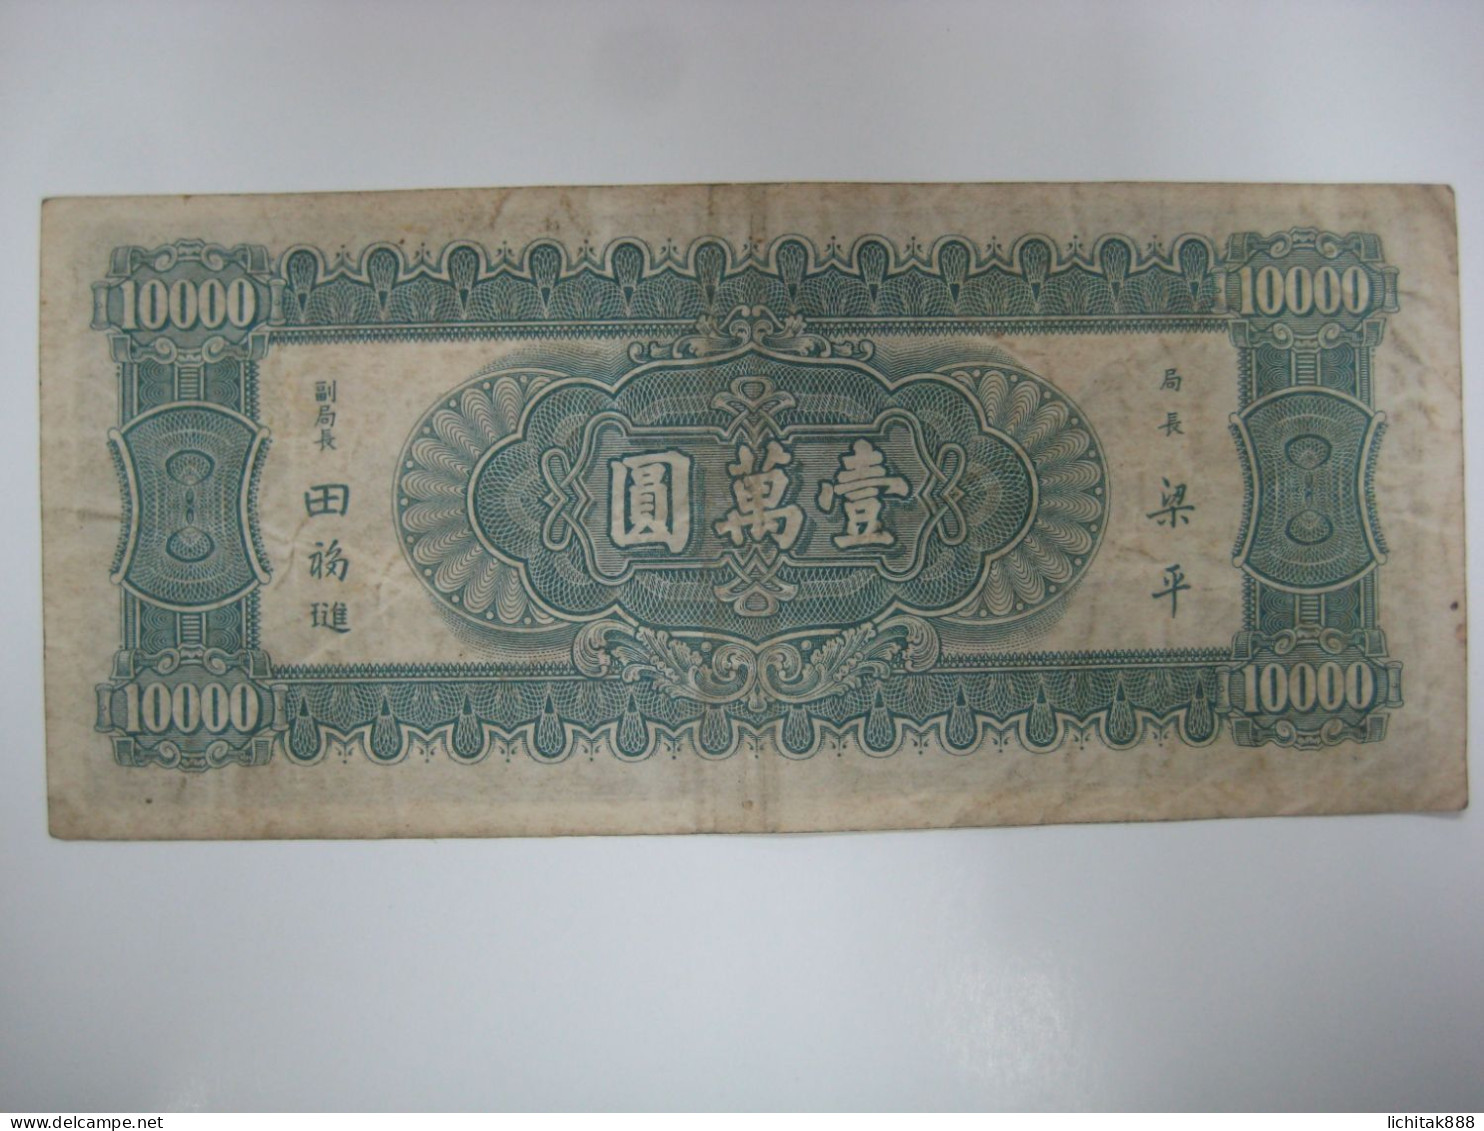 1947 China The Central Bank Of China 10000 Yuan Banknote Used - China